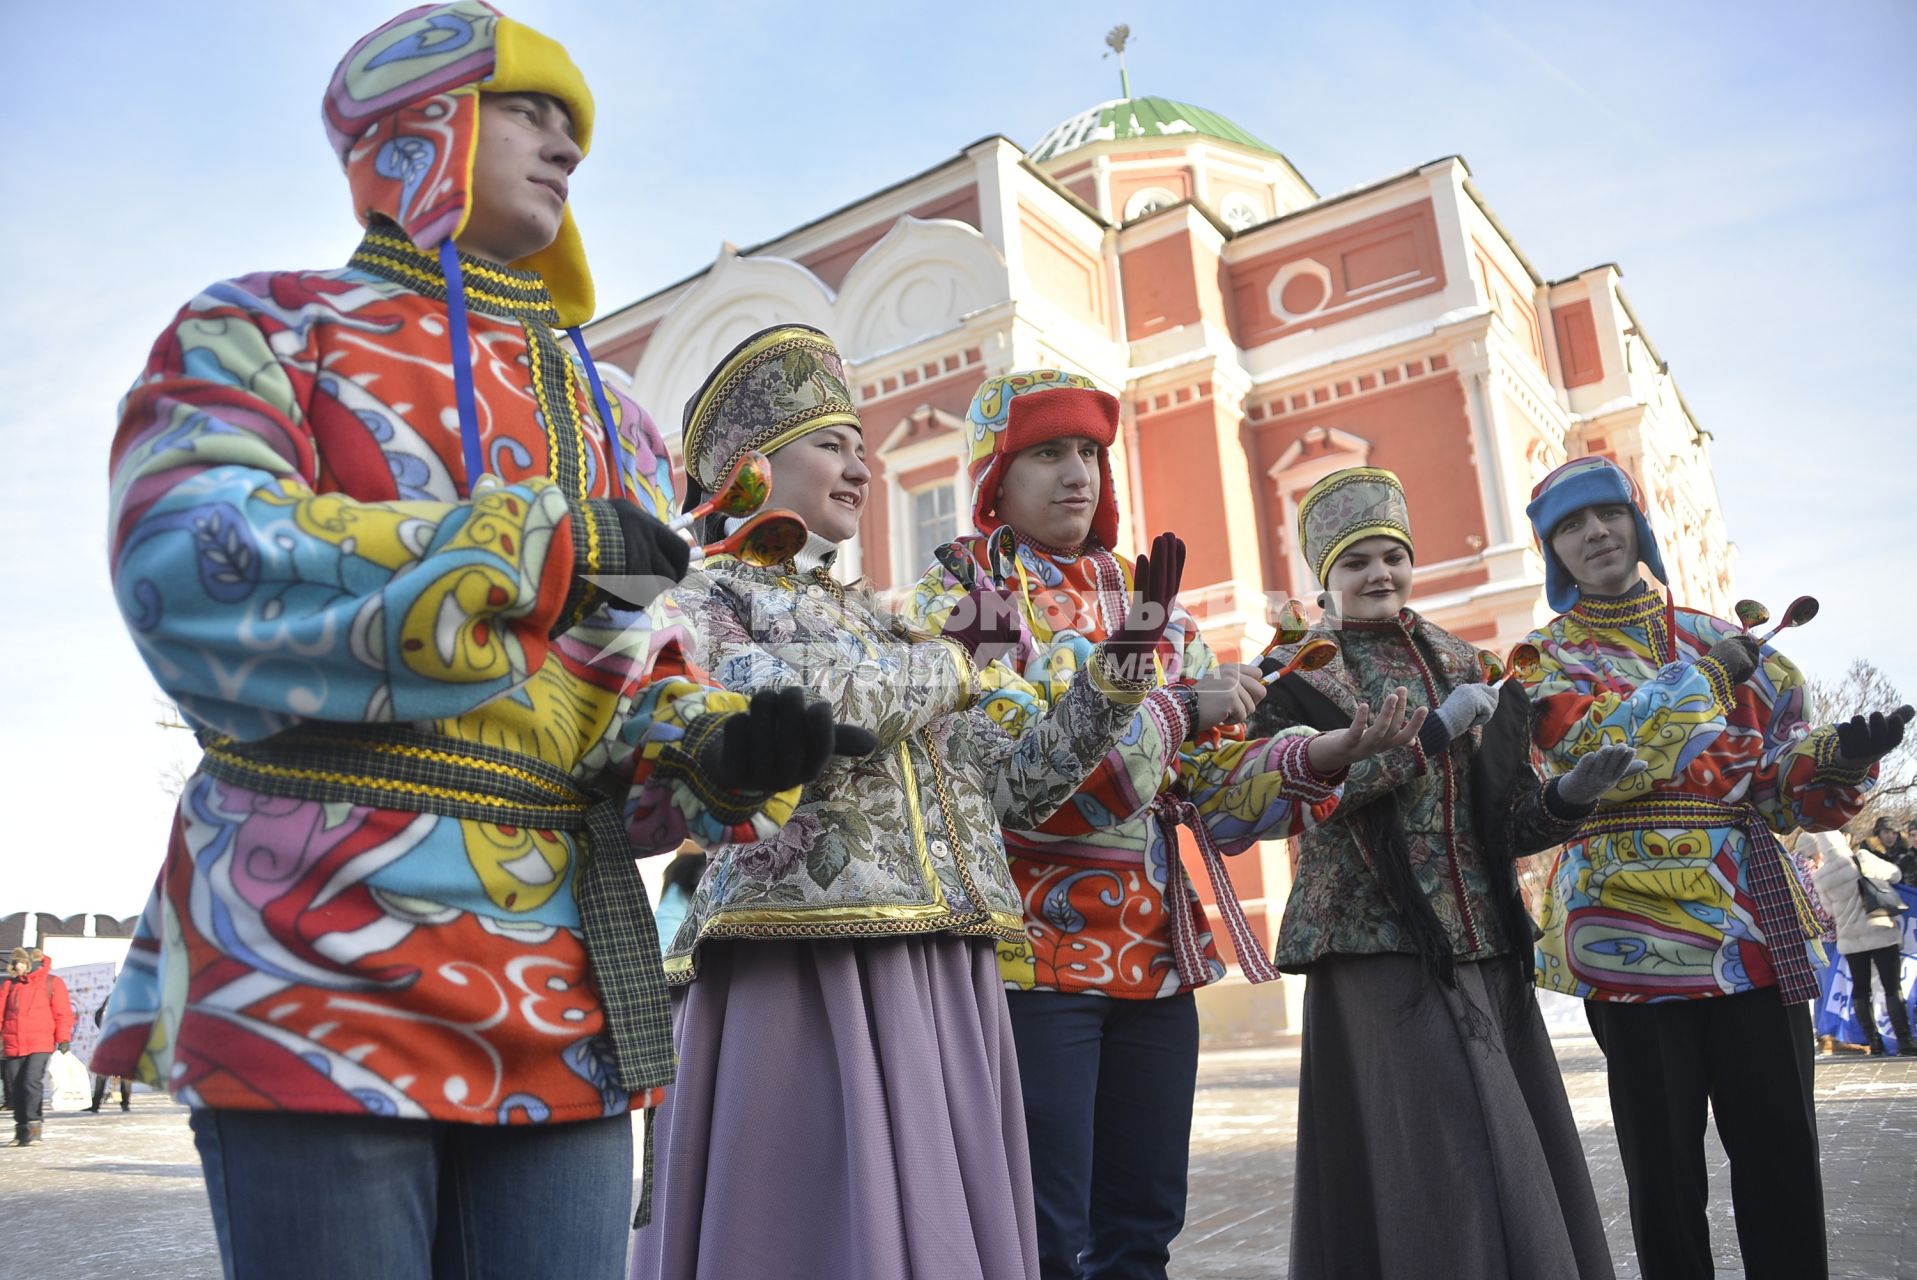 Тула. Артисты в народных костюмах во  время празднования  Дня студента  в Тульском кремле.